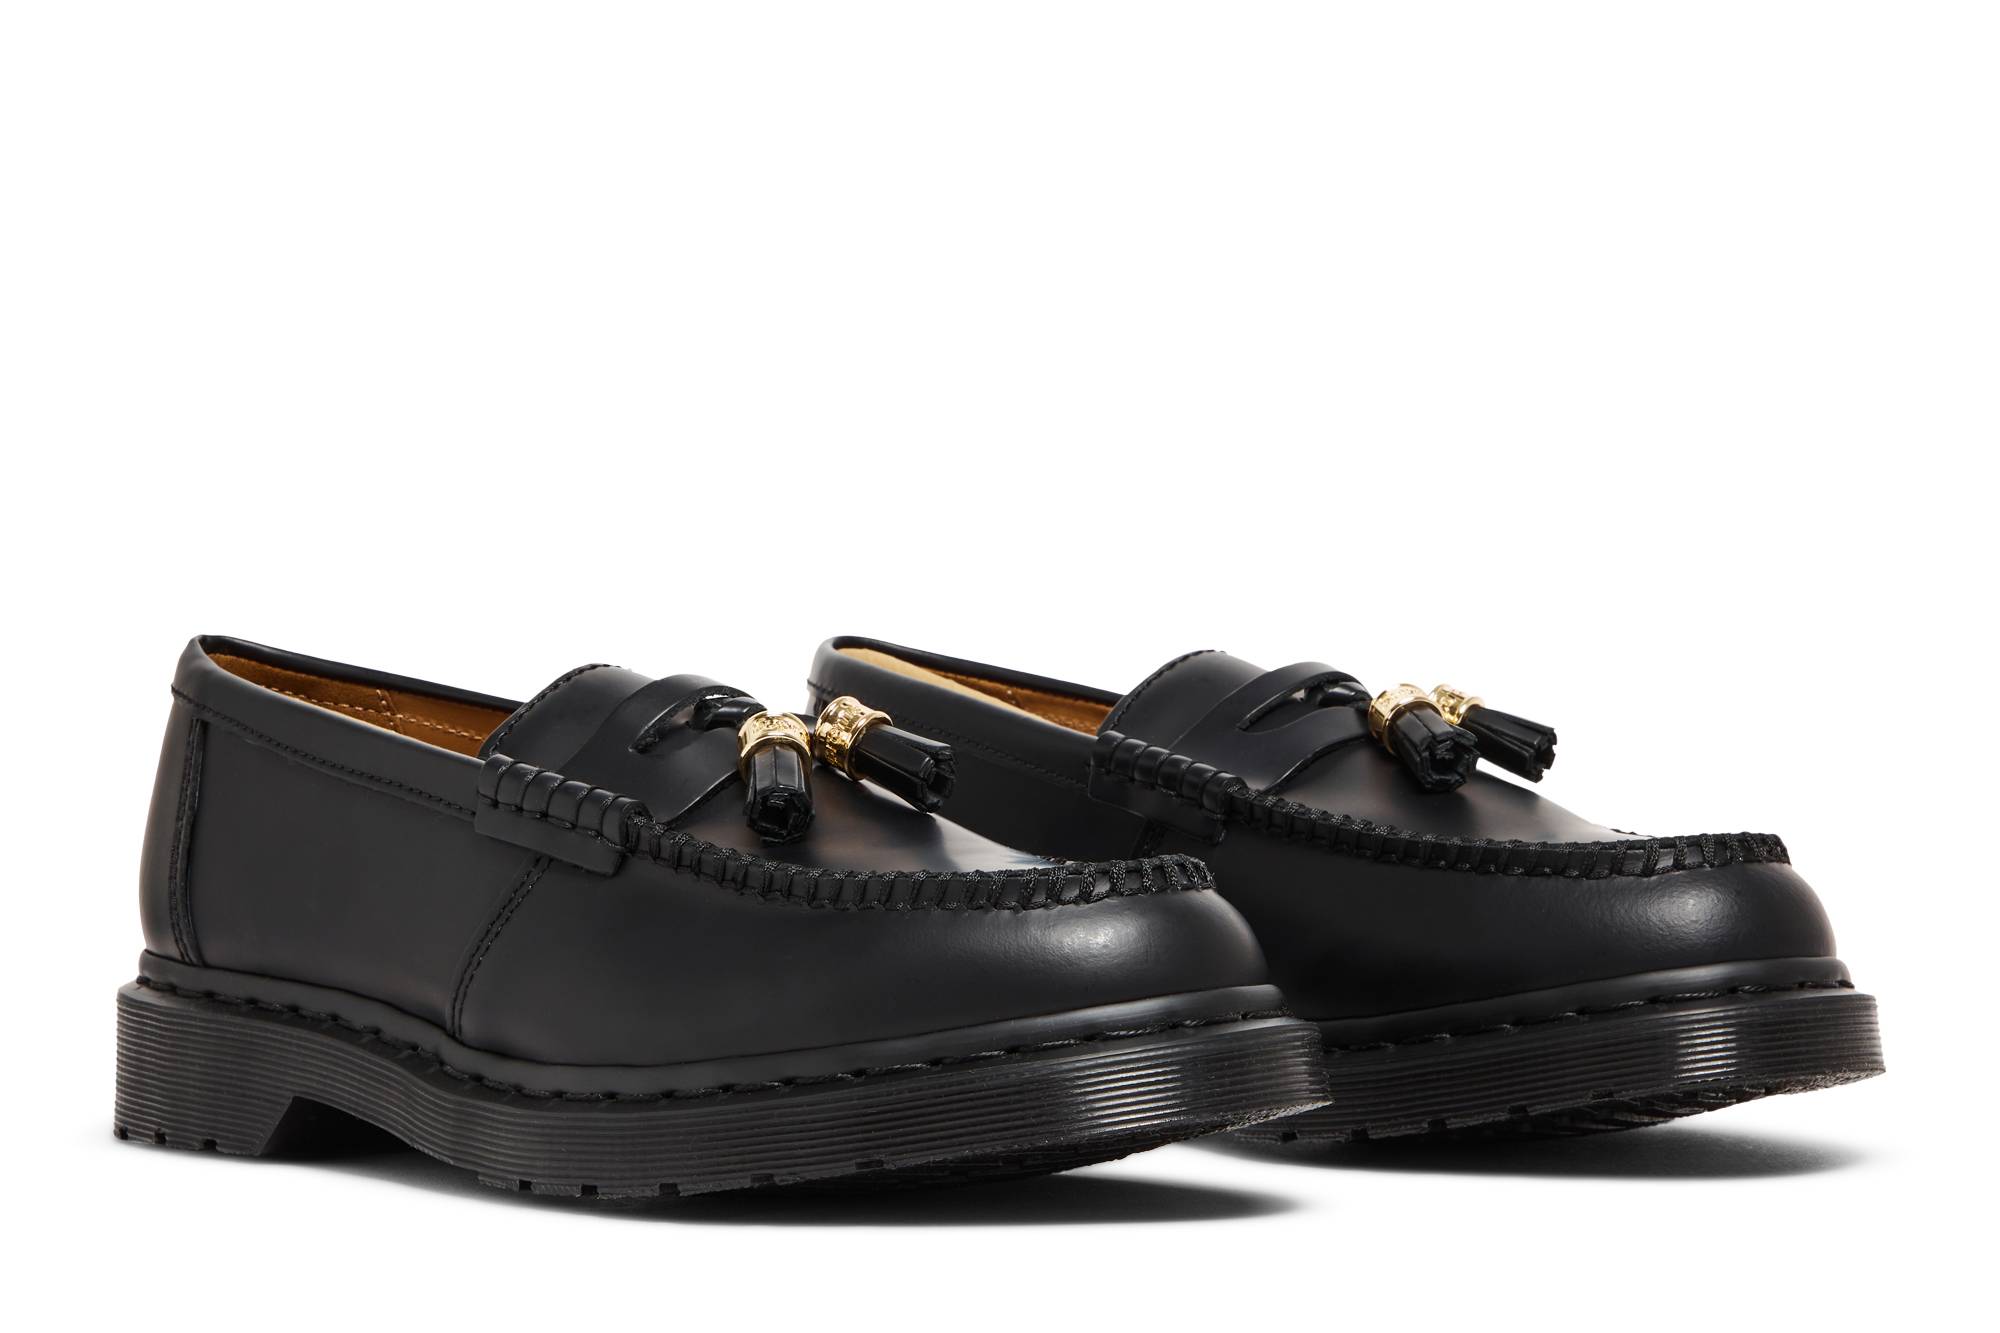 Pre-owned Dr. Martens' Supreme X Penton Tassel Loafer 'black'